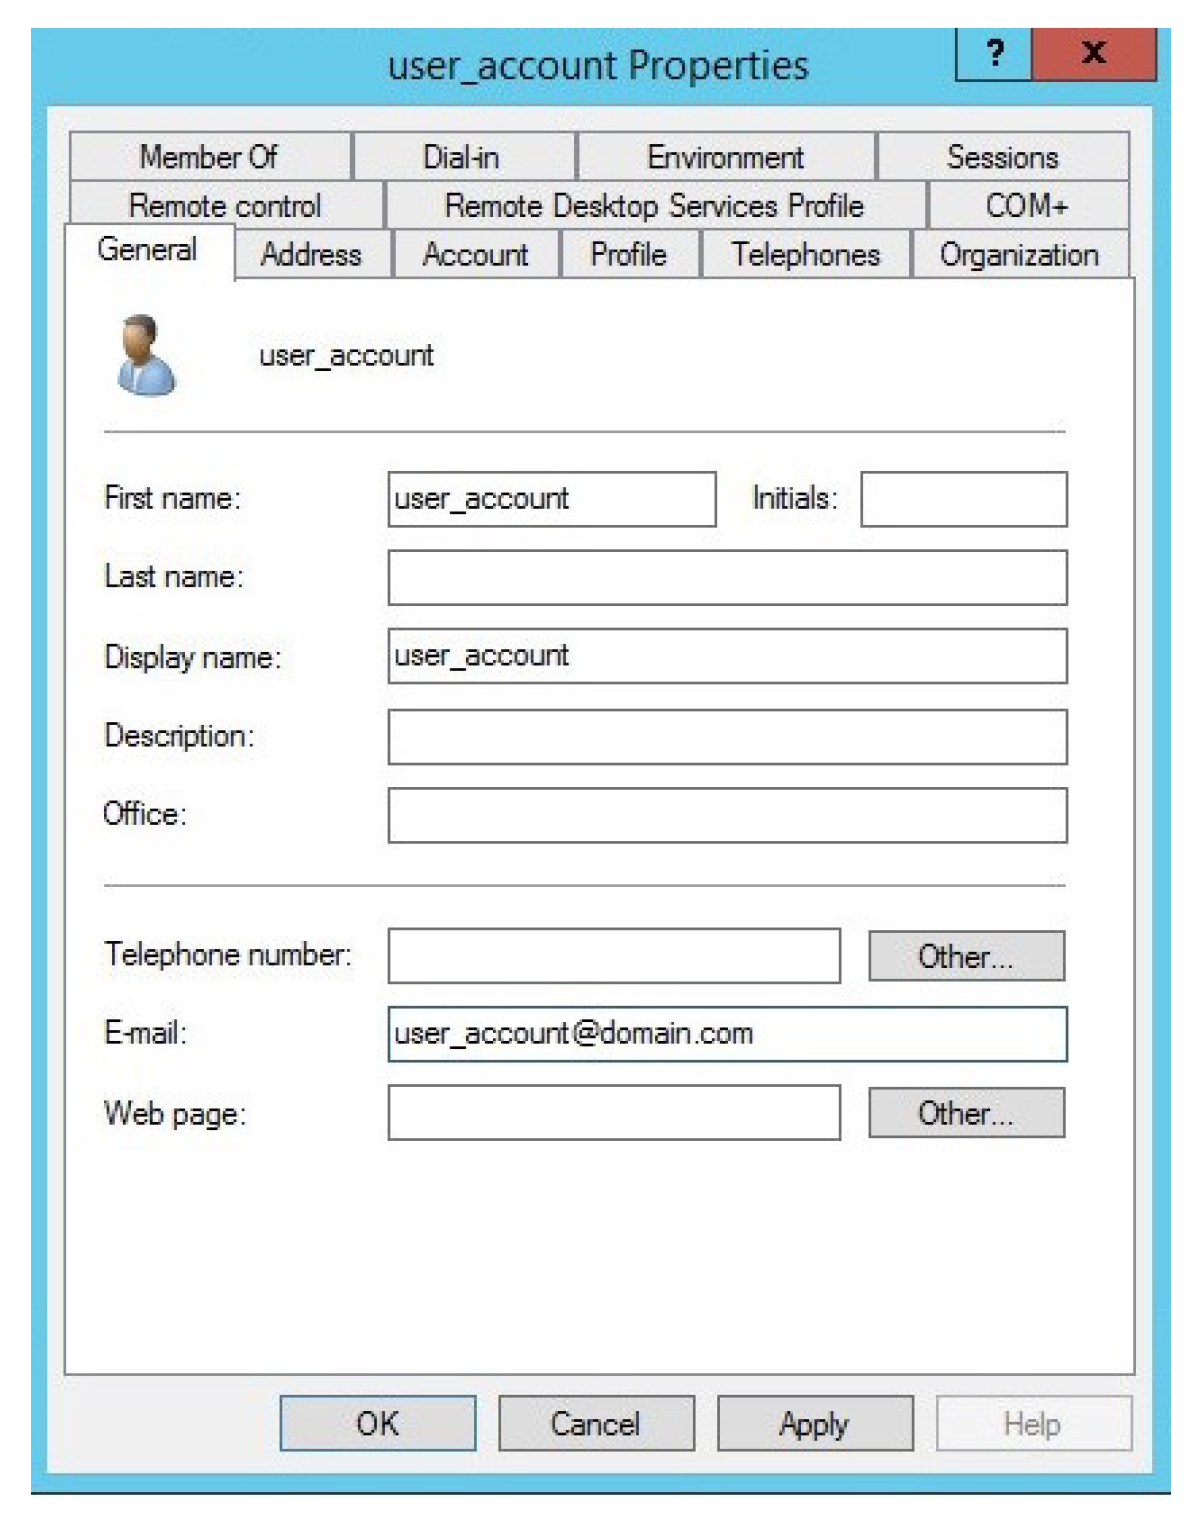 A screenshot showing the user_account Properties window.